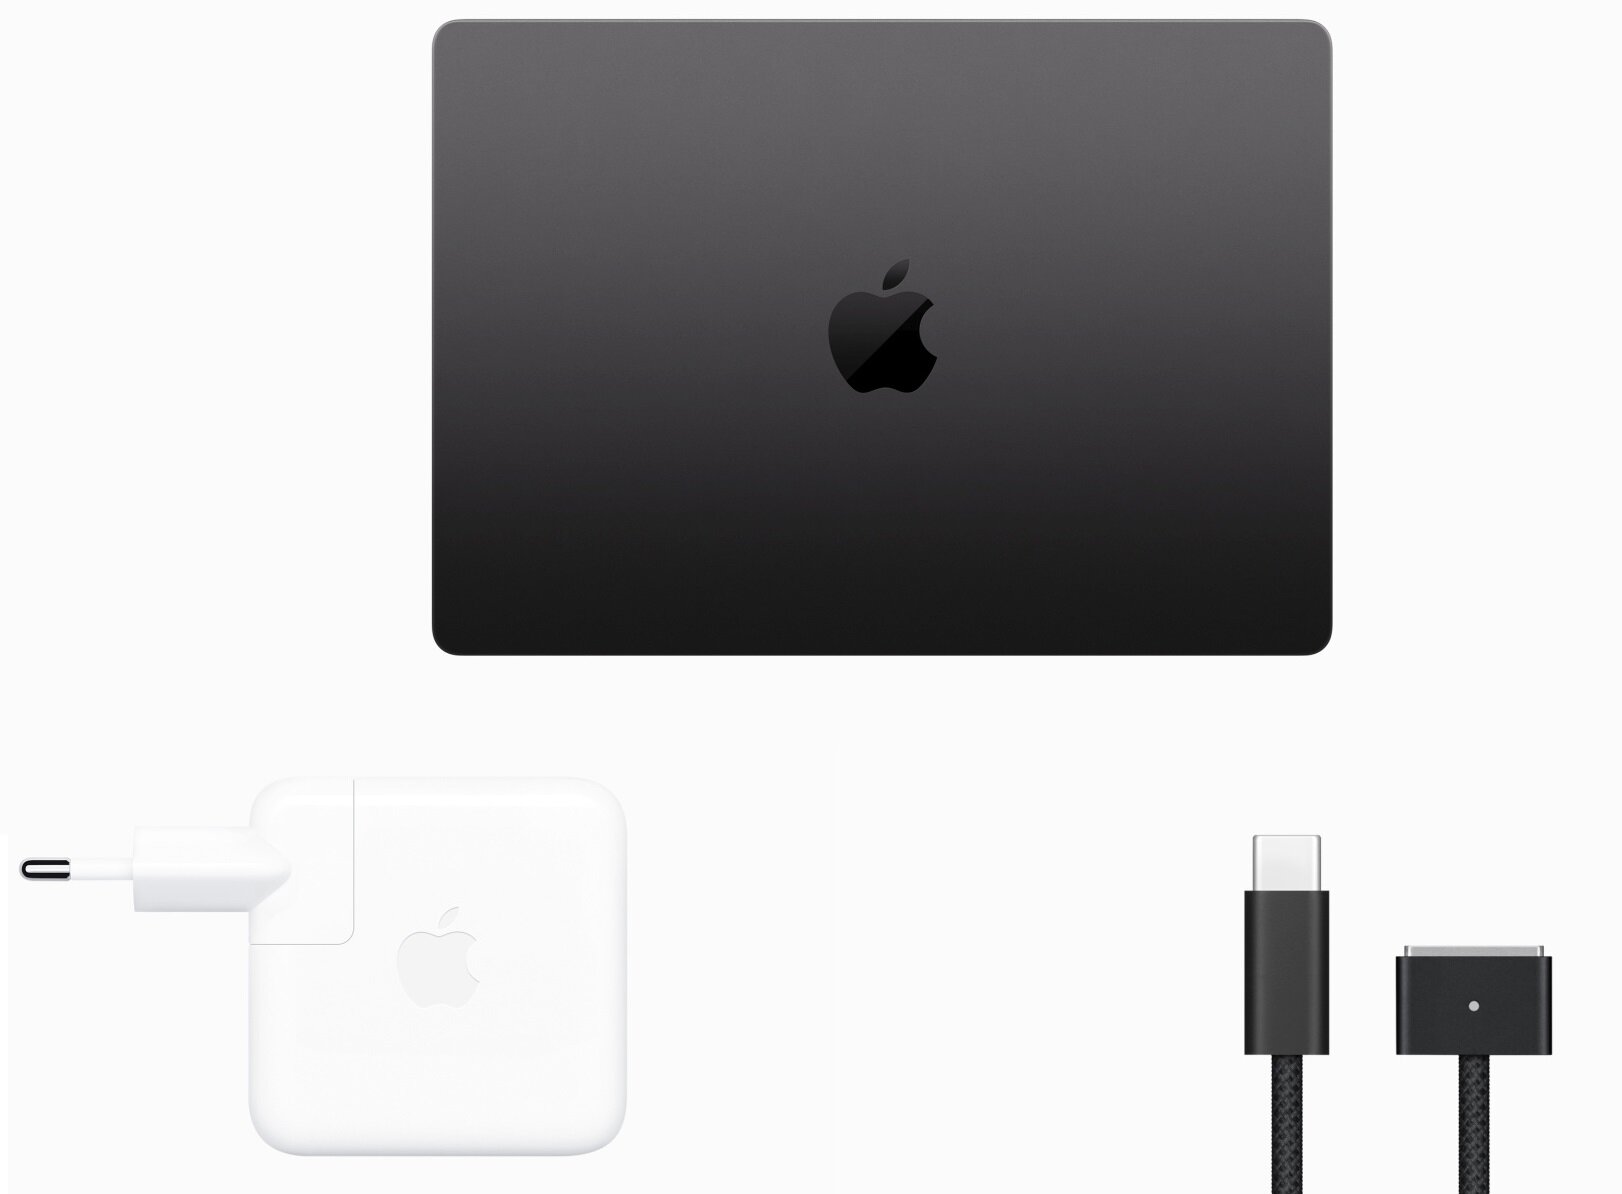 Laptop APPLE MacBook Pro  ekran wydajność grafika karta procesor taktowanie pojemność bateria ładowanie pamięć ram rom wyświetlacz rozdzielczość kamerka system klawiatura porty 